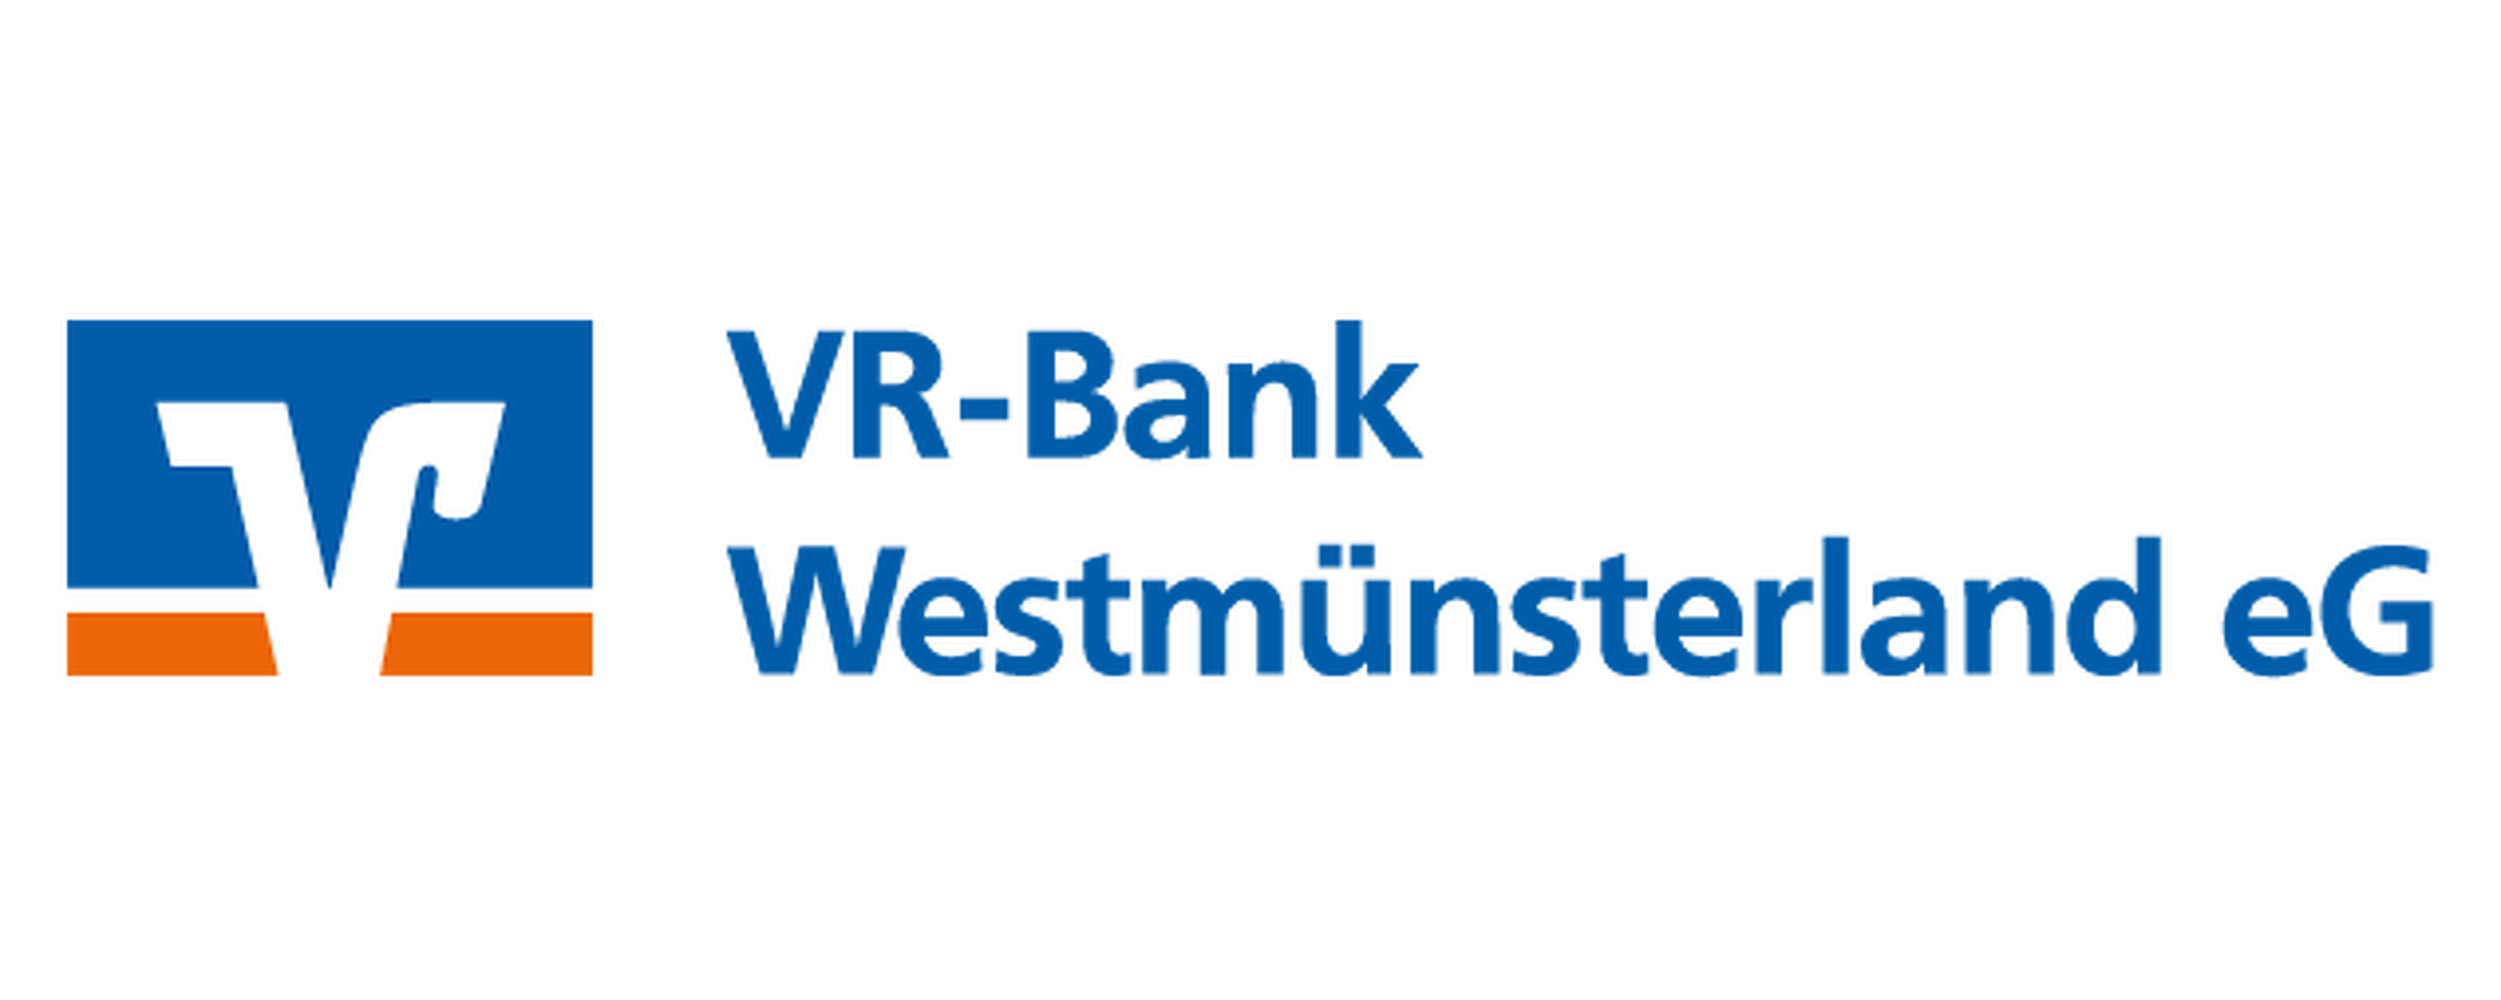 VR-Bank West Münsterland